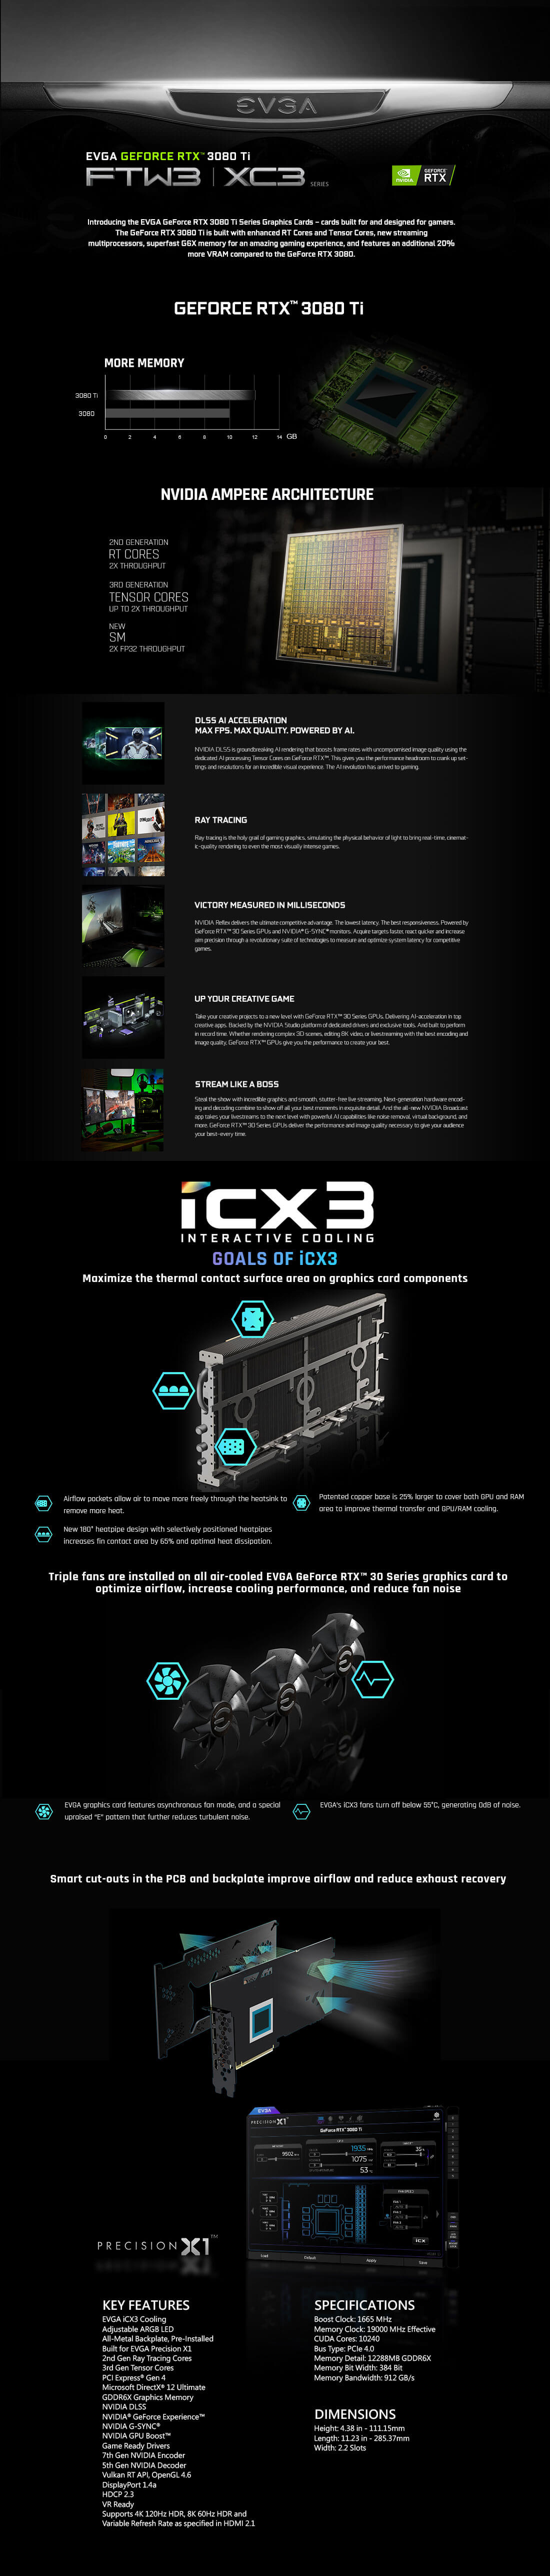 EVGA GeForce RTX™ 3080Ti XC3 ULTRA GAMING - 12GB GDDR6X